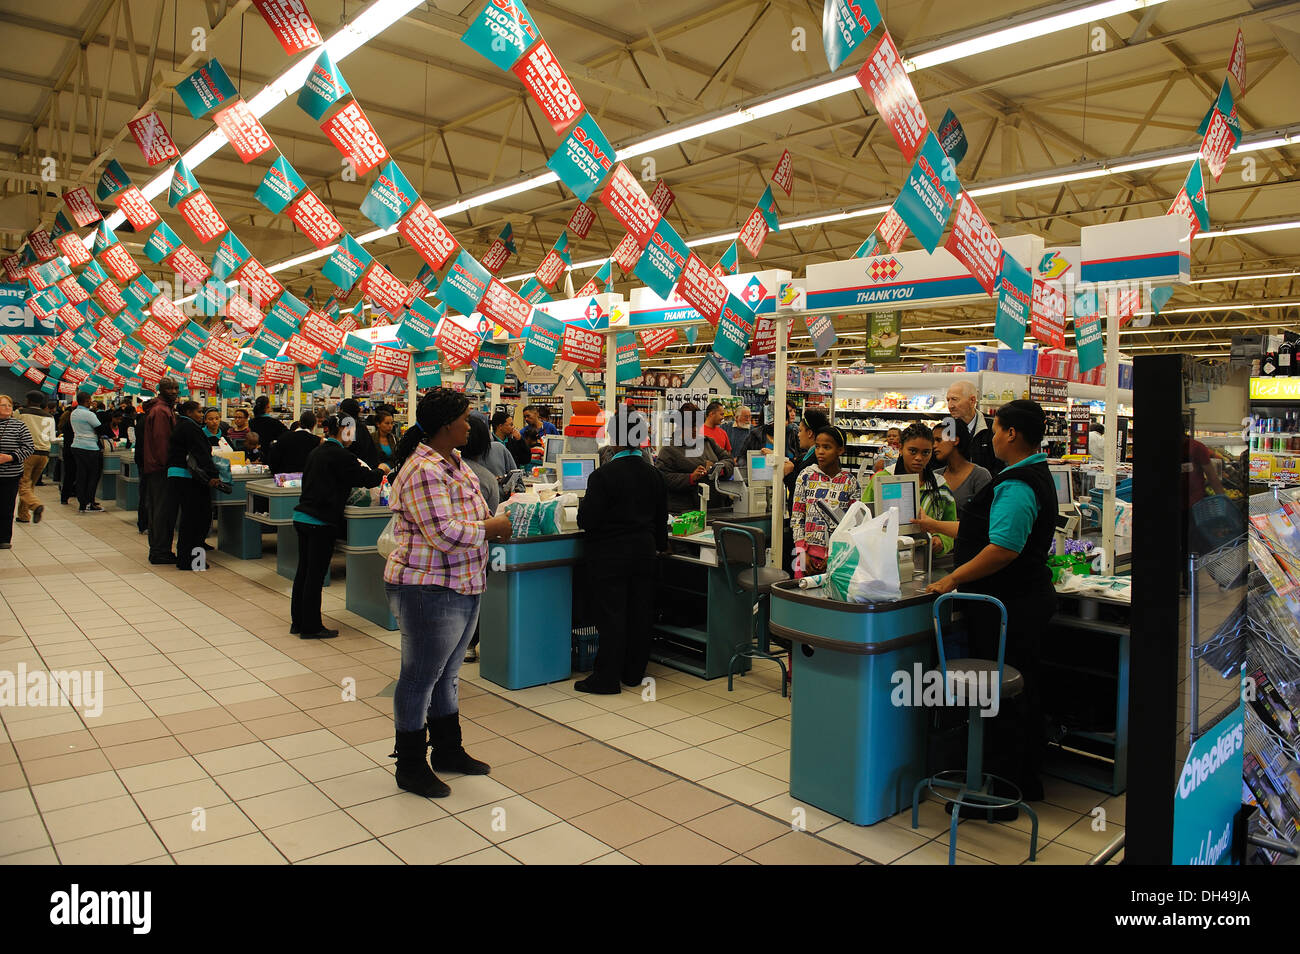 Supermarkt, Südafrika, keine Freigabe, nur für redaktionelle Verwendung Stockfoto